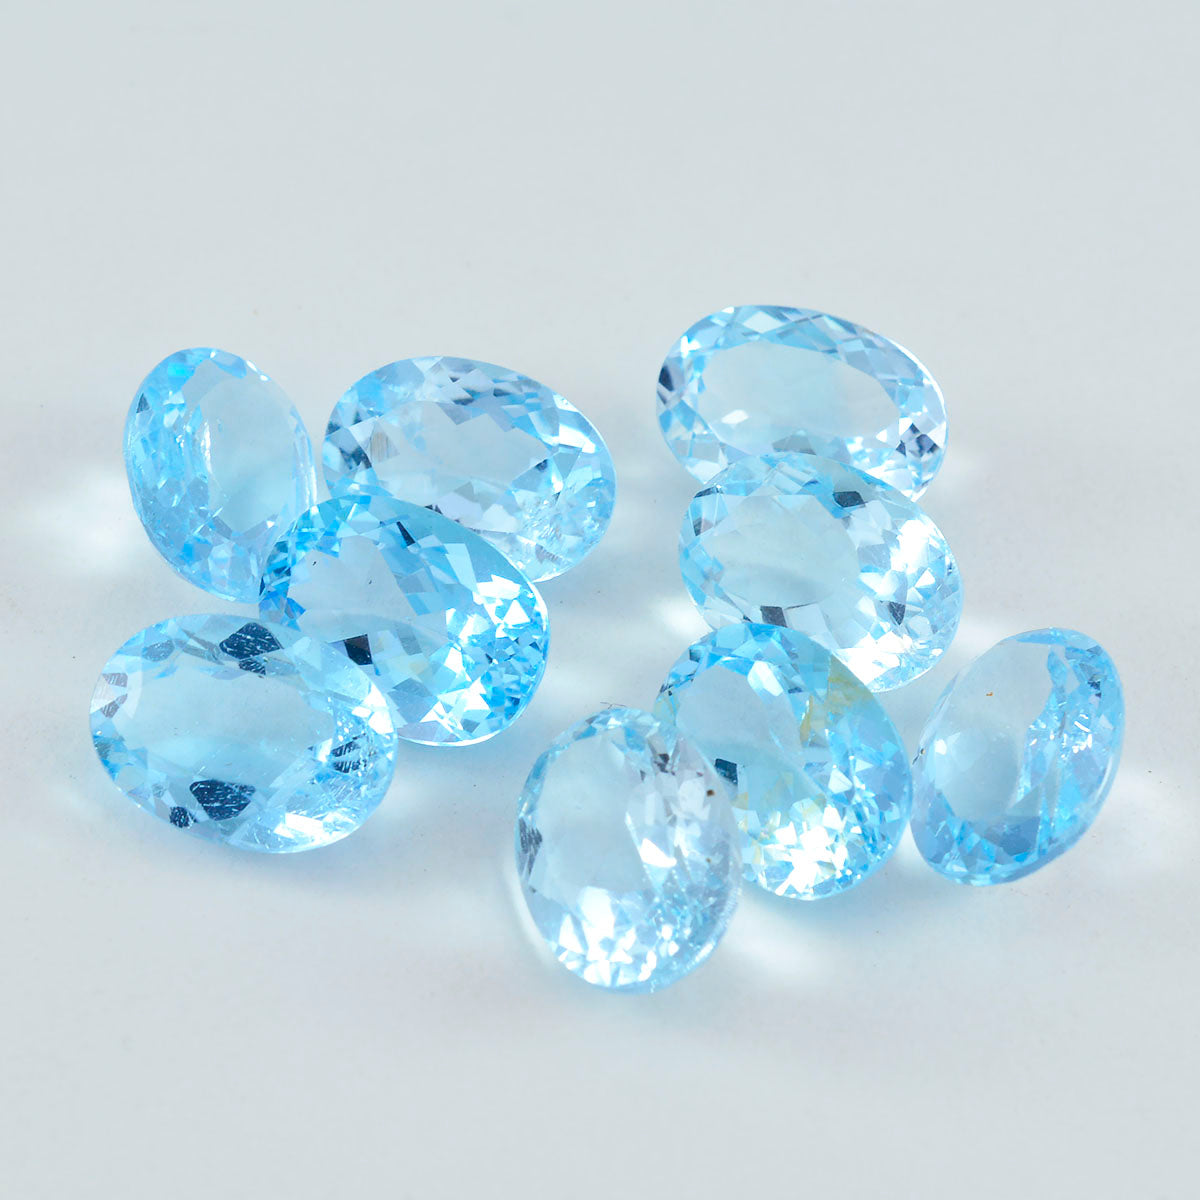 Riyogems 1 pieza Topacio azul Natural facetado 9x11mm forma ovalada hermosa piedra suelta de calidad